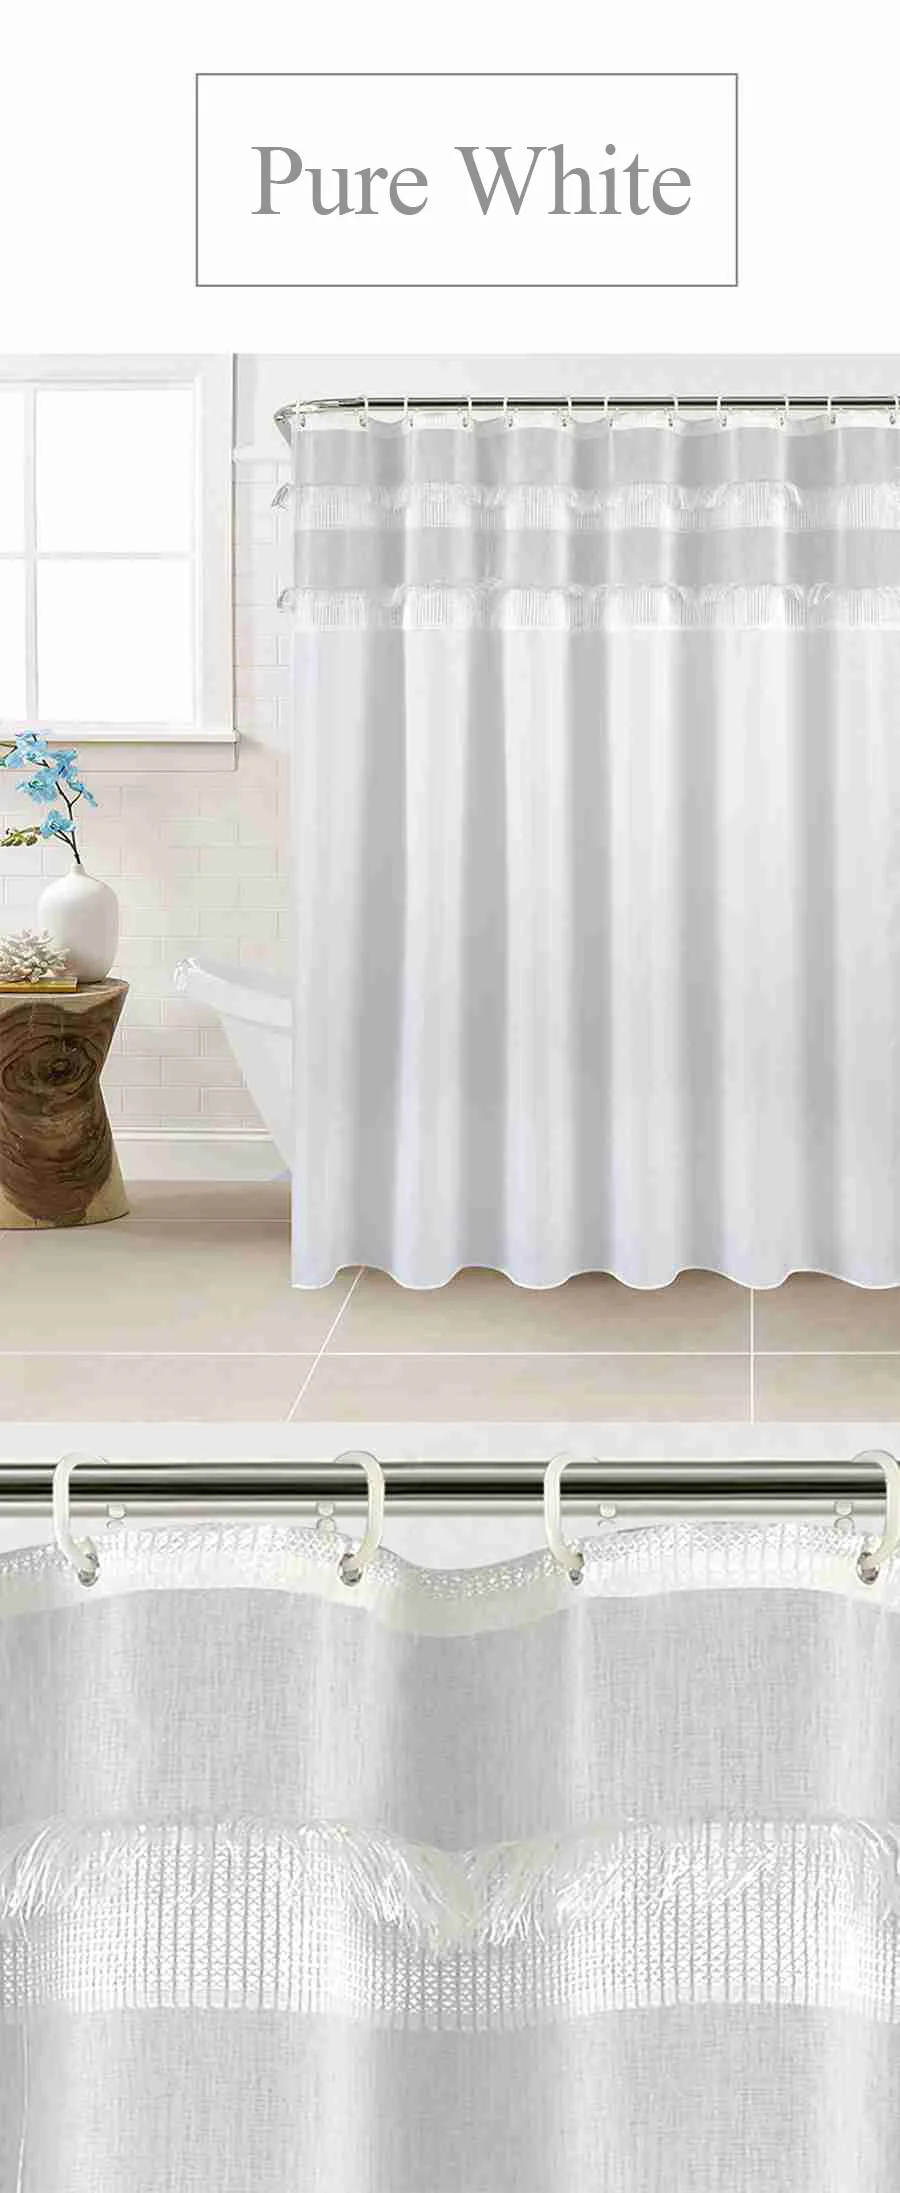 shower curtain cortinas bathroom curtain 1